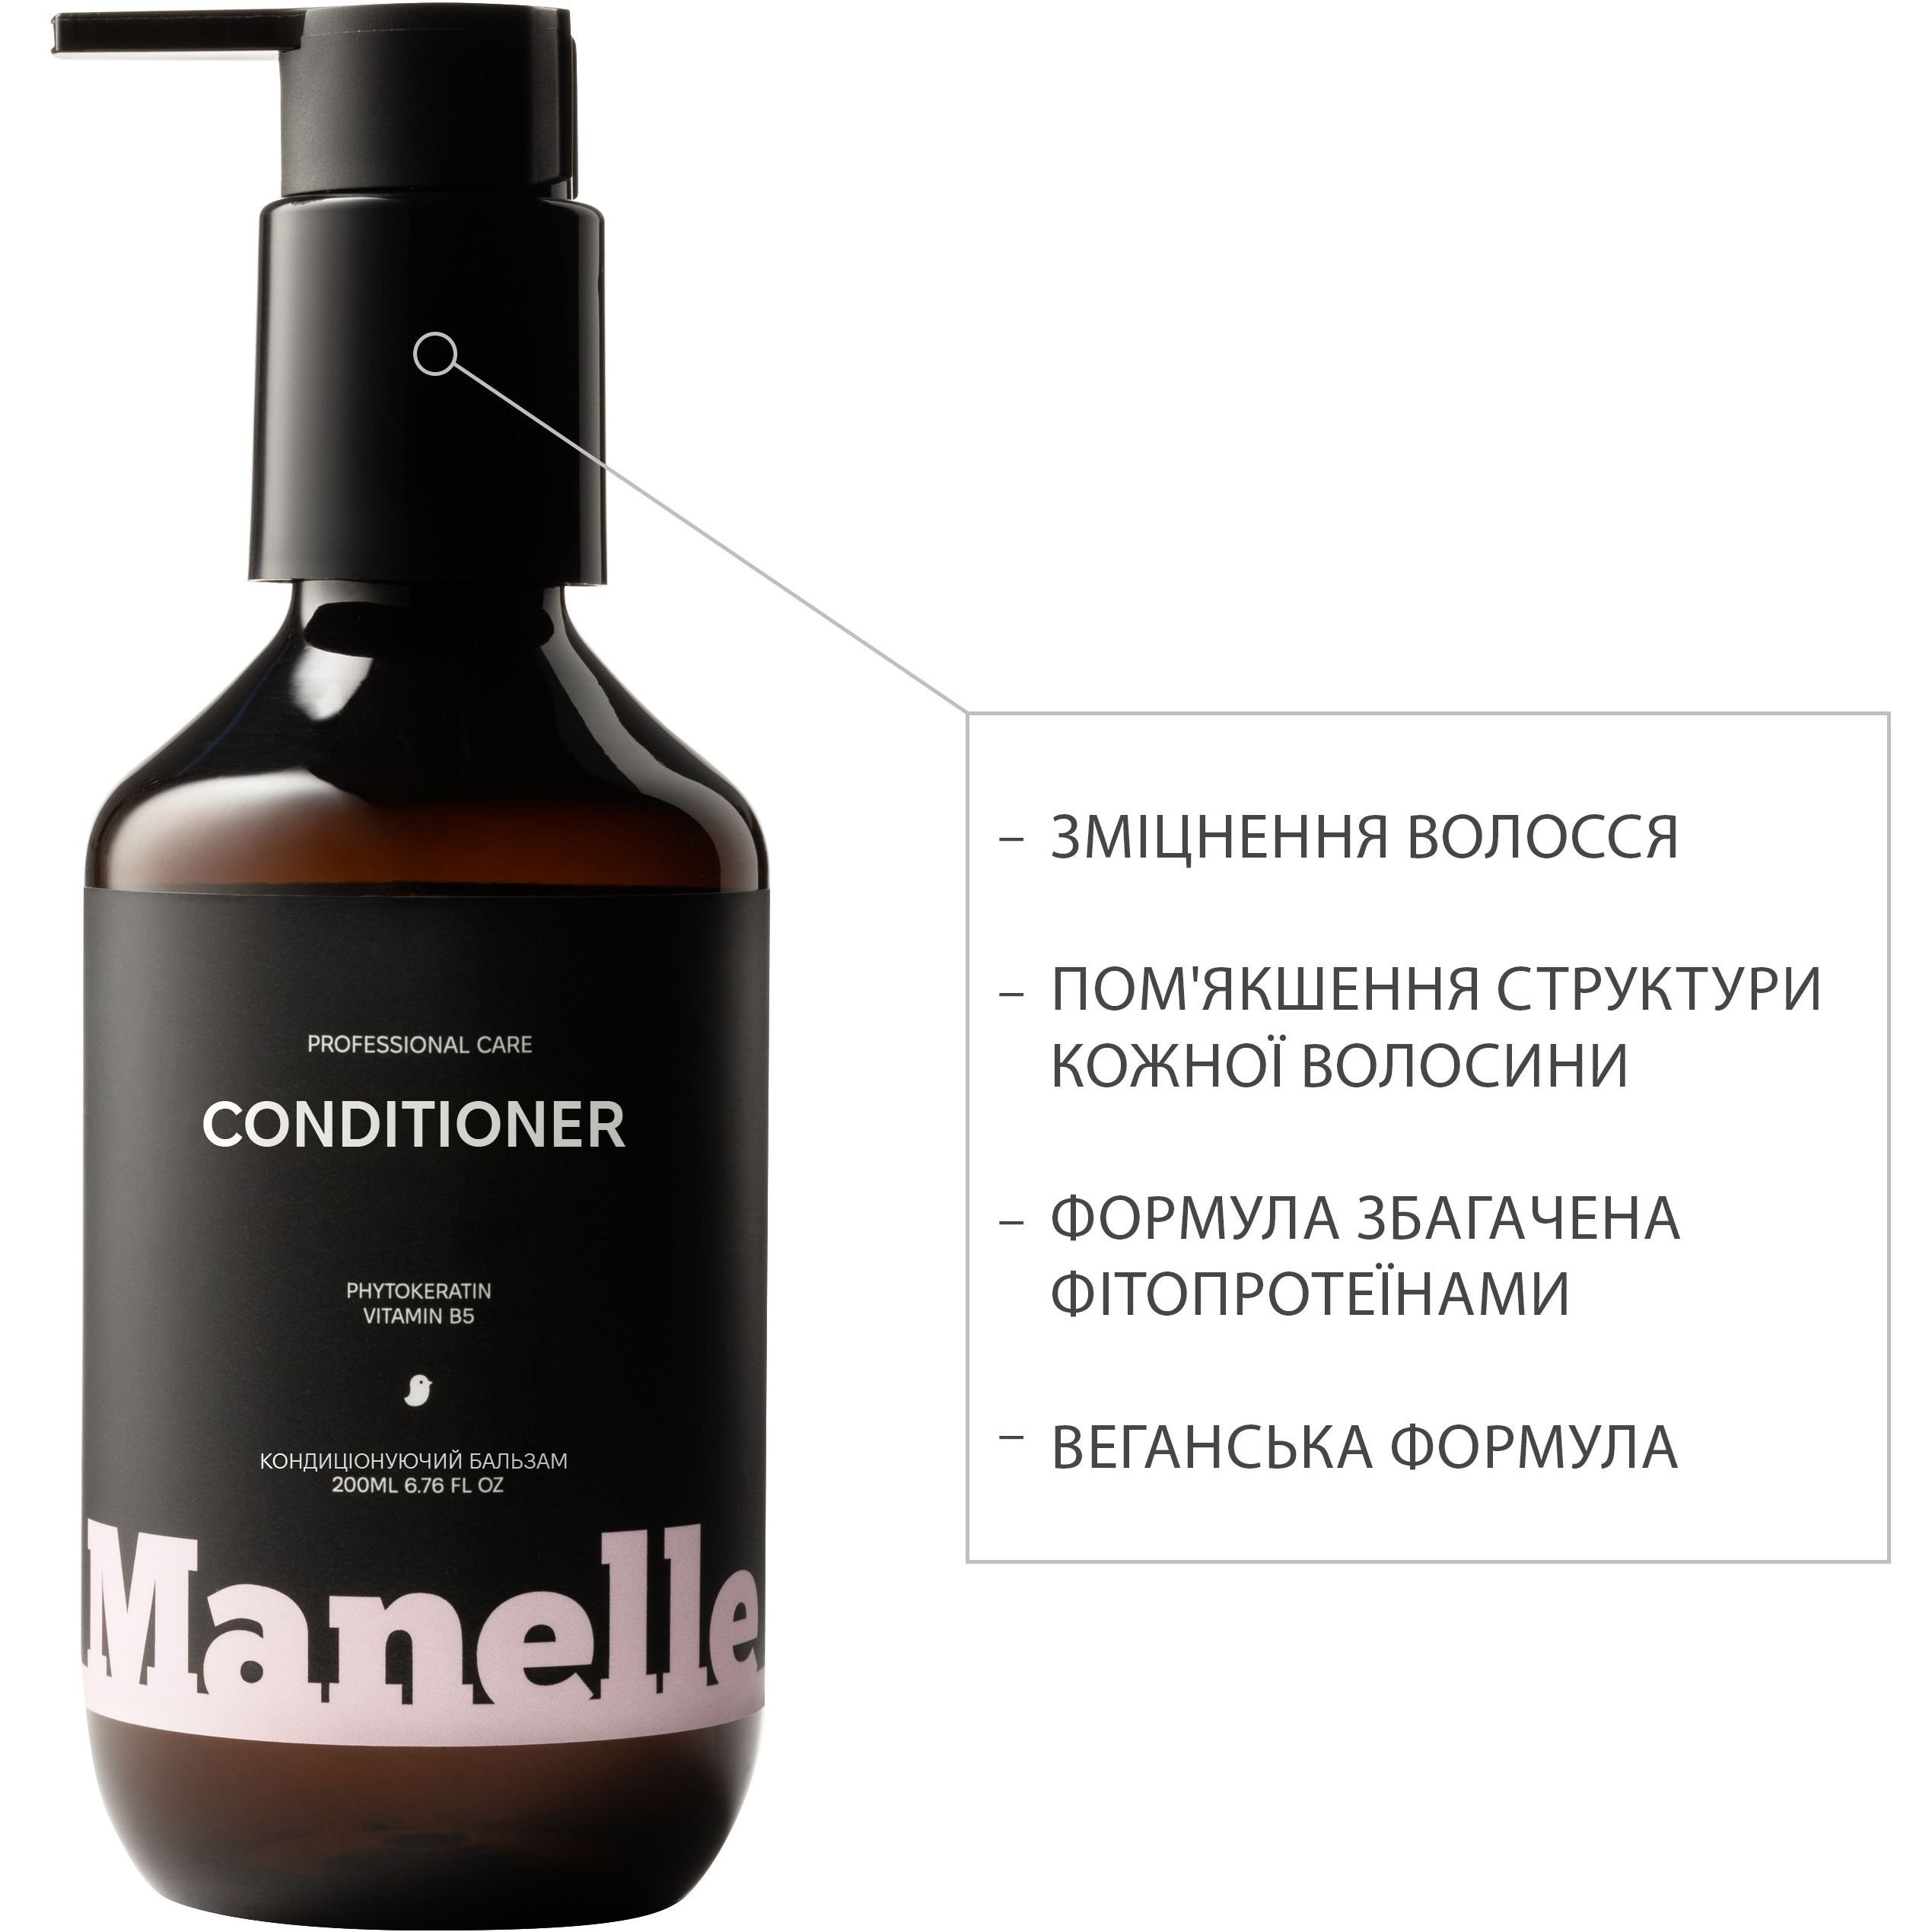 Бессульфатный кондиционер для волос Manelle Рrofessional care Phytokeratin vitamin B5 200 мл - фото 2